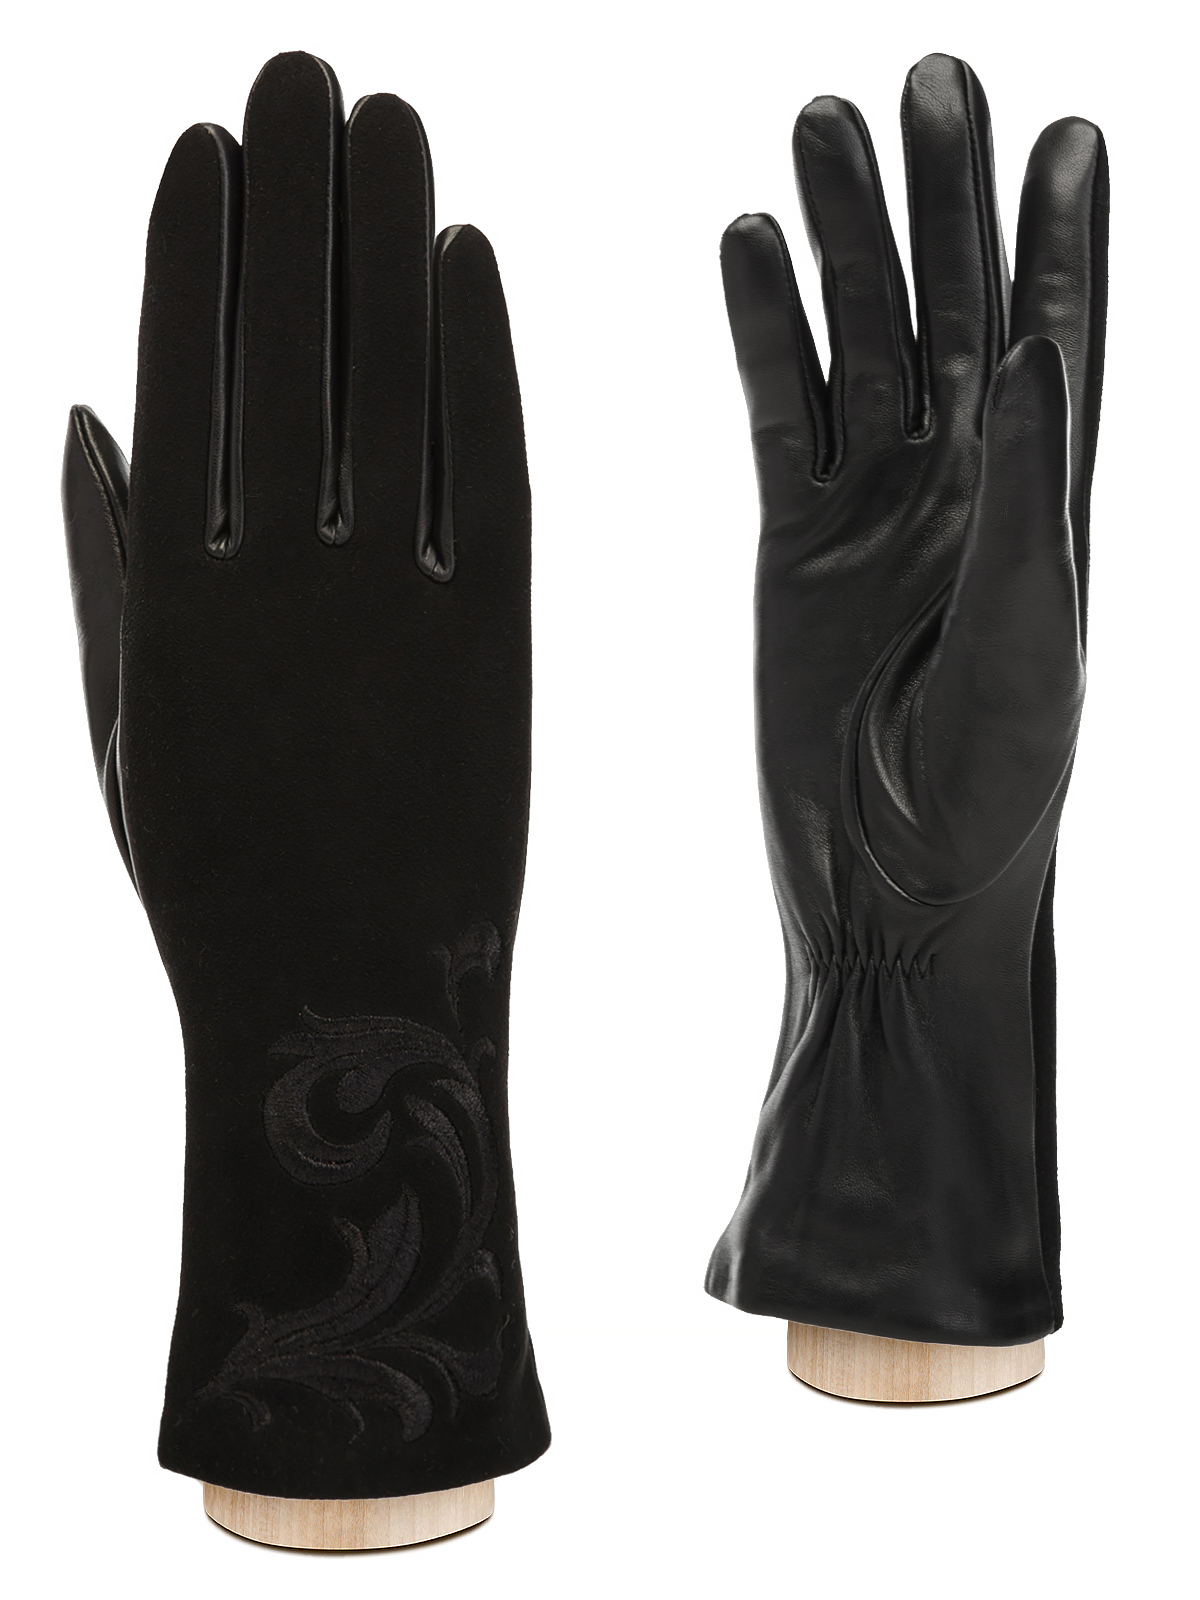 Перчатки женские Eleganzza IS997 черные р. 6,5